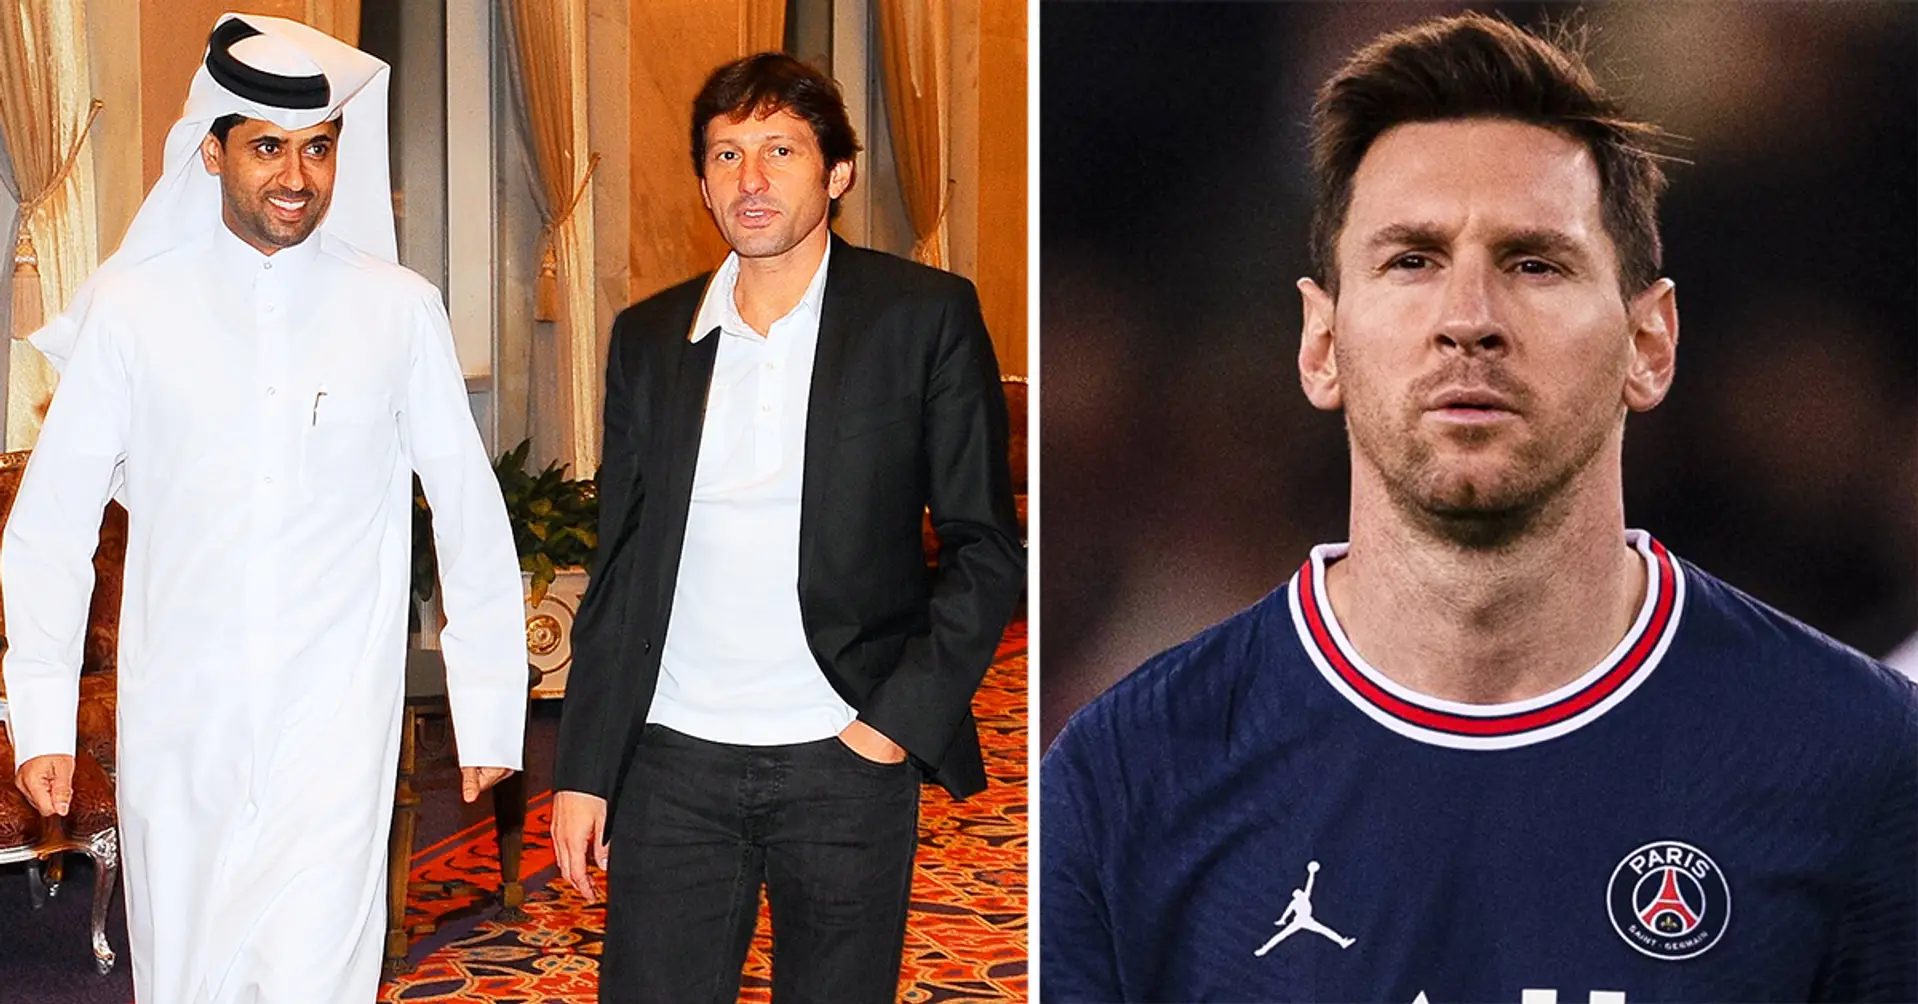 "Wir sind nicht einverstanden": Neuer Konflikt bei PSG nach Leonardos Worten zu Lionel Messi